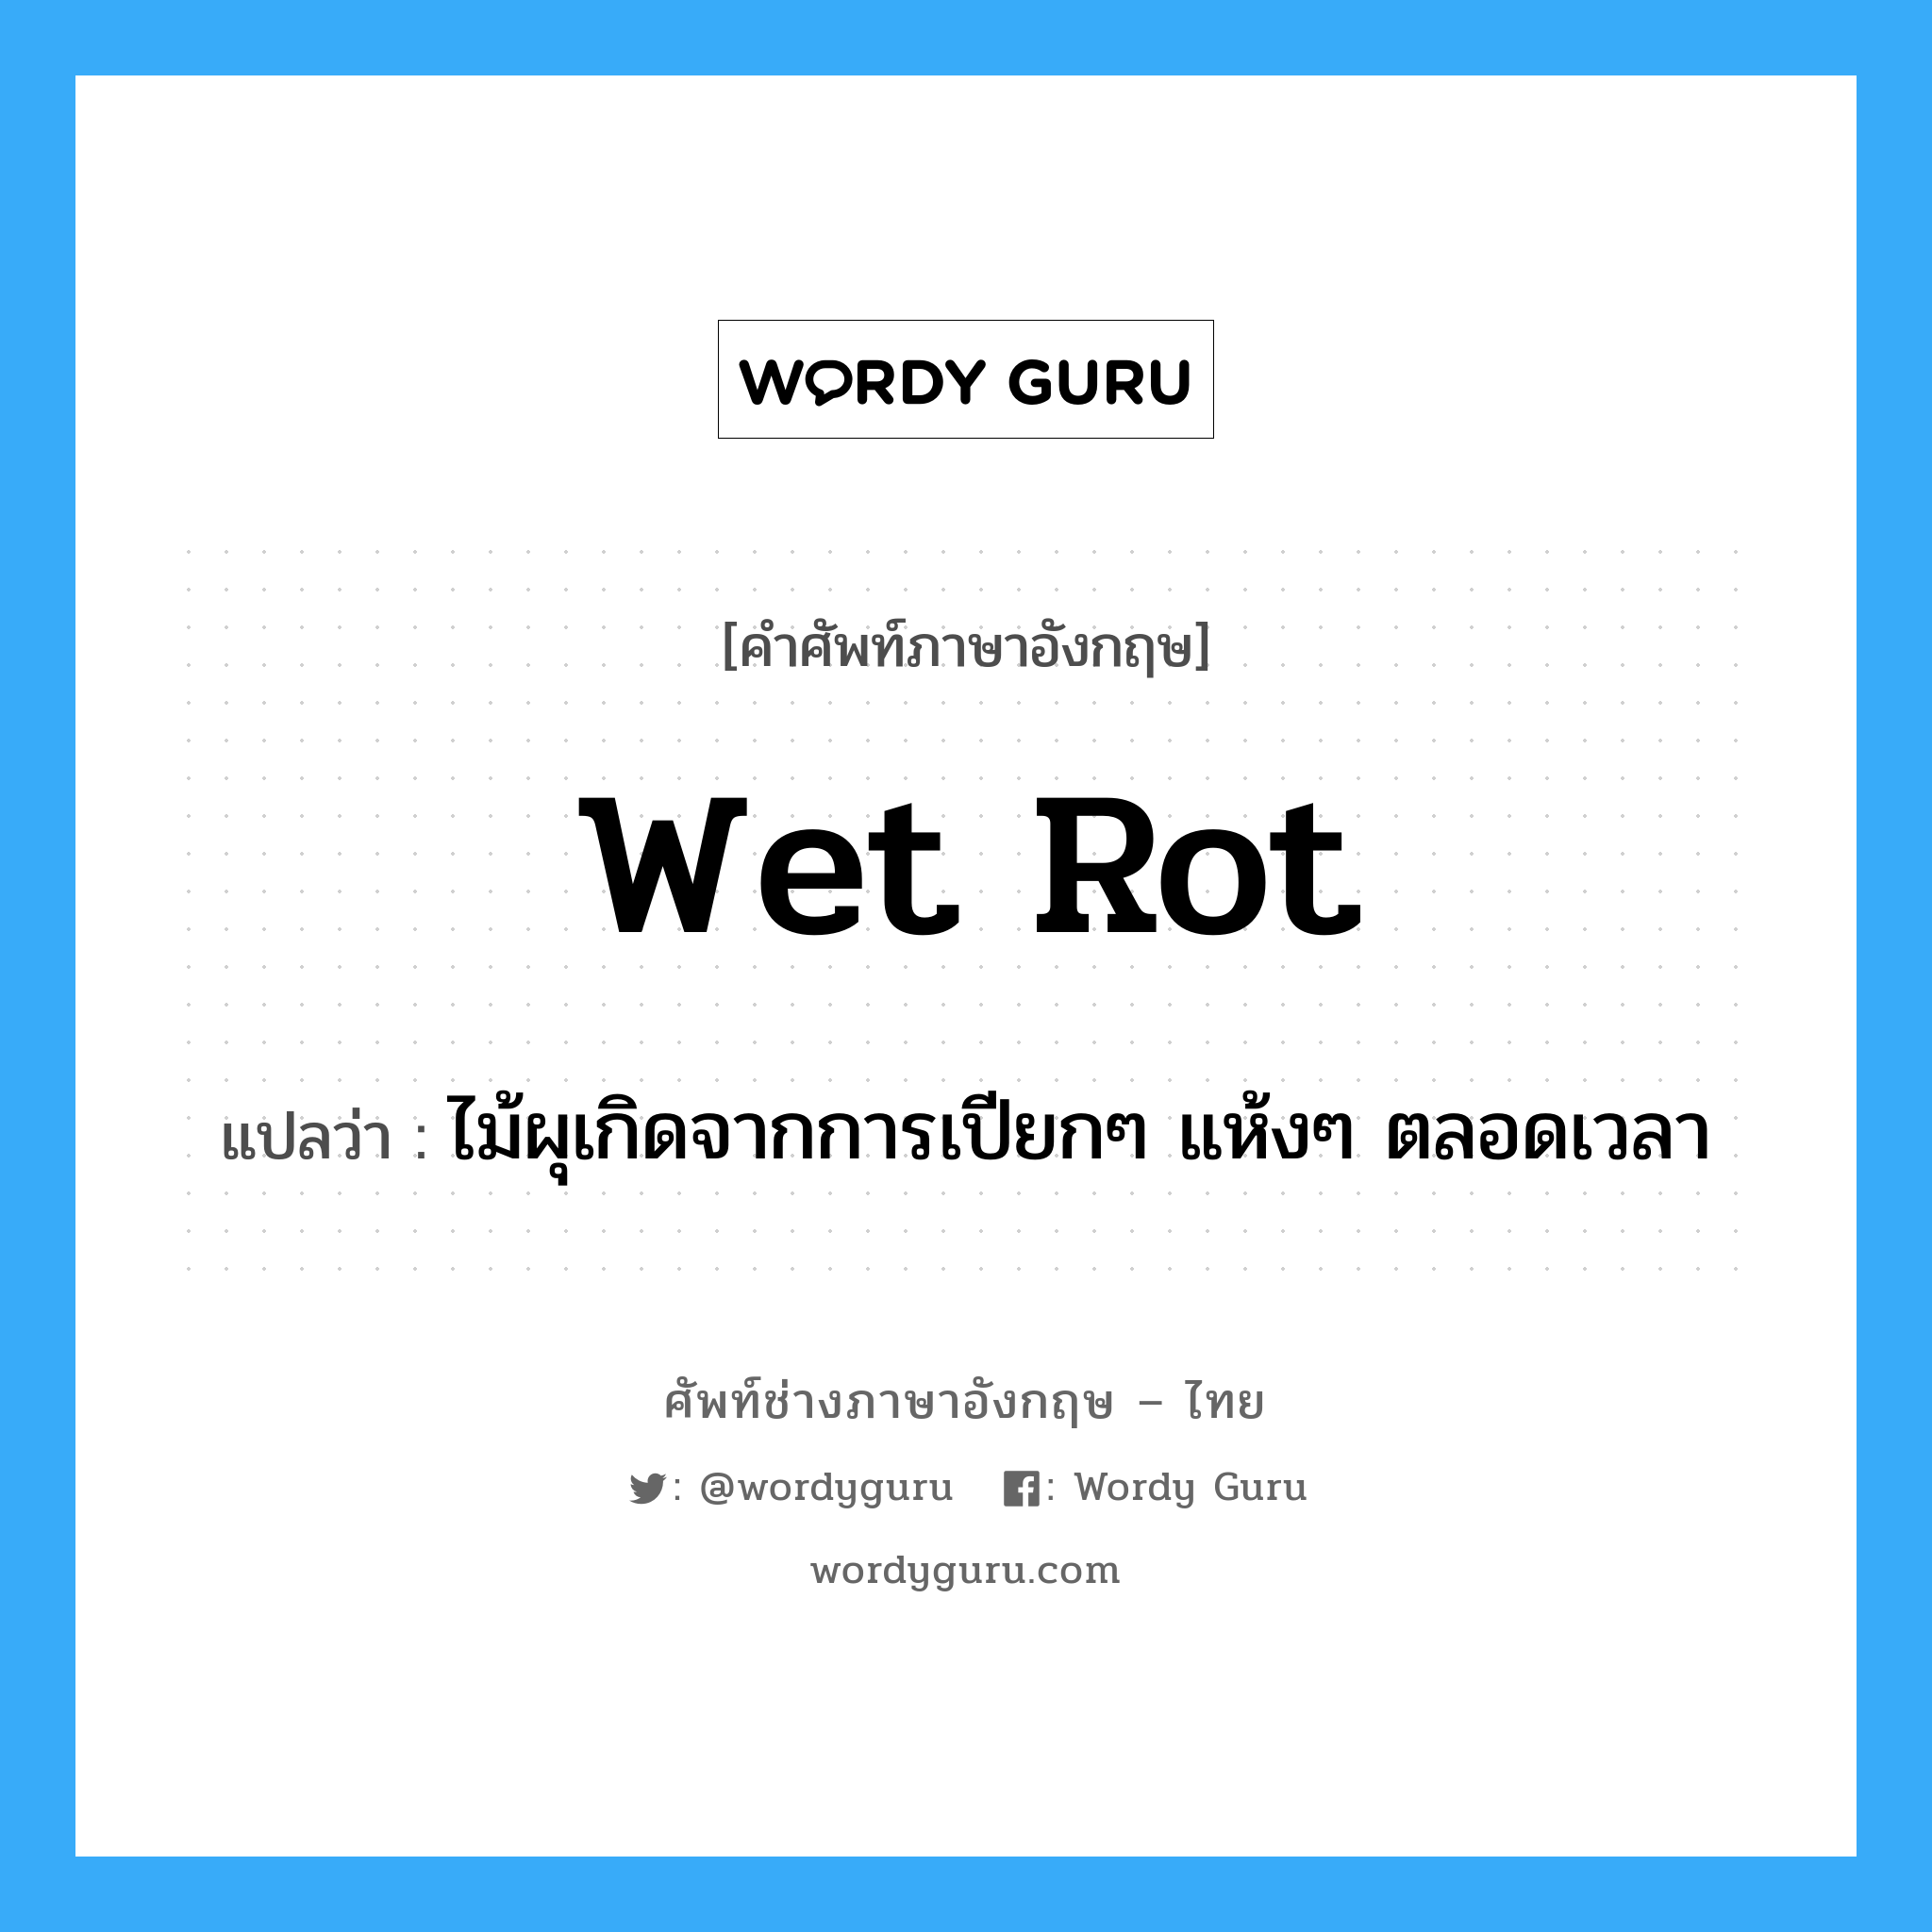 wet rot แปลว่า?, คำศัพท์ช่างภาษาอังกฤษ - ไทย wet rot คำศัพท์ภาษาอังกฤษ wet rot แปลว่า ไม้ผุเกิดจากการเปียกๆ แห้งๆ ตลอดเวลา